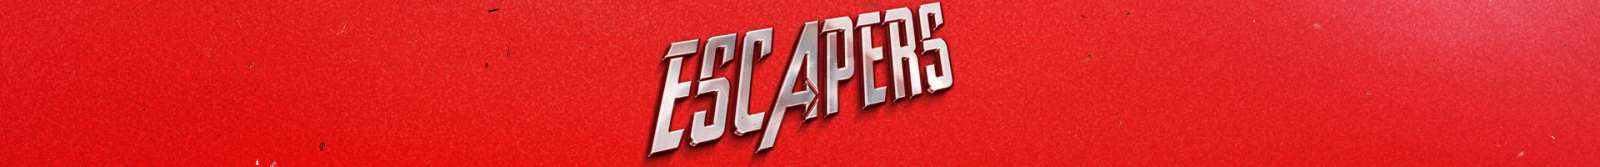 Escapers - İnceleme ve Kaçış Ekibi Yorumları